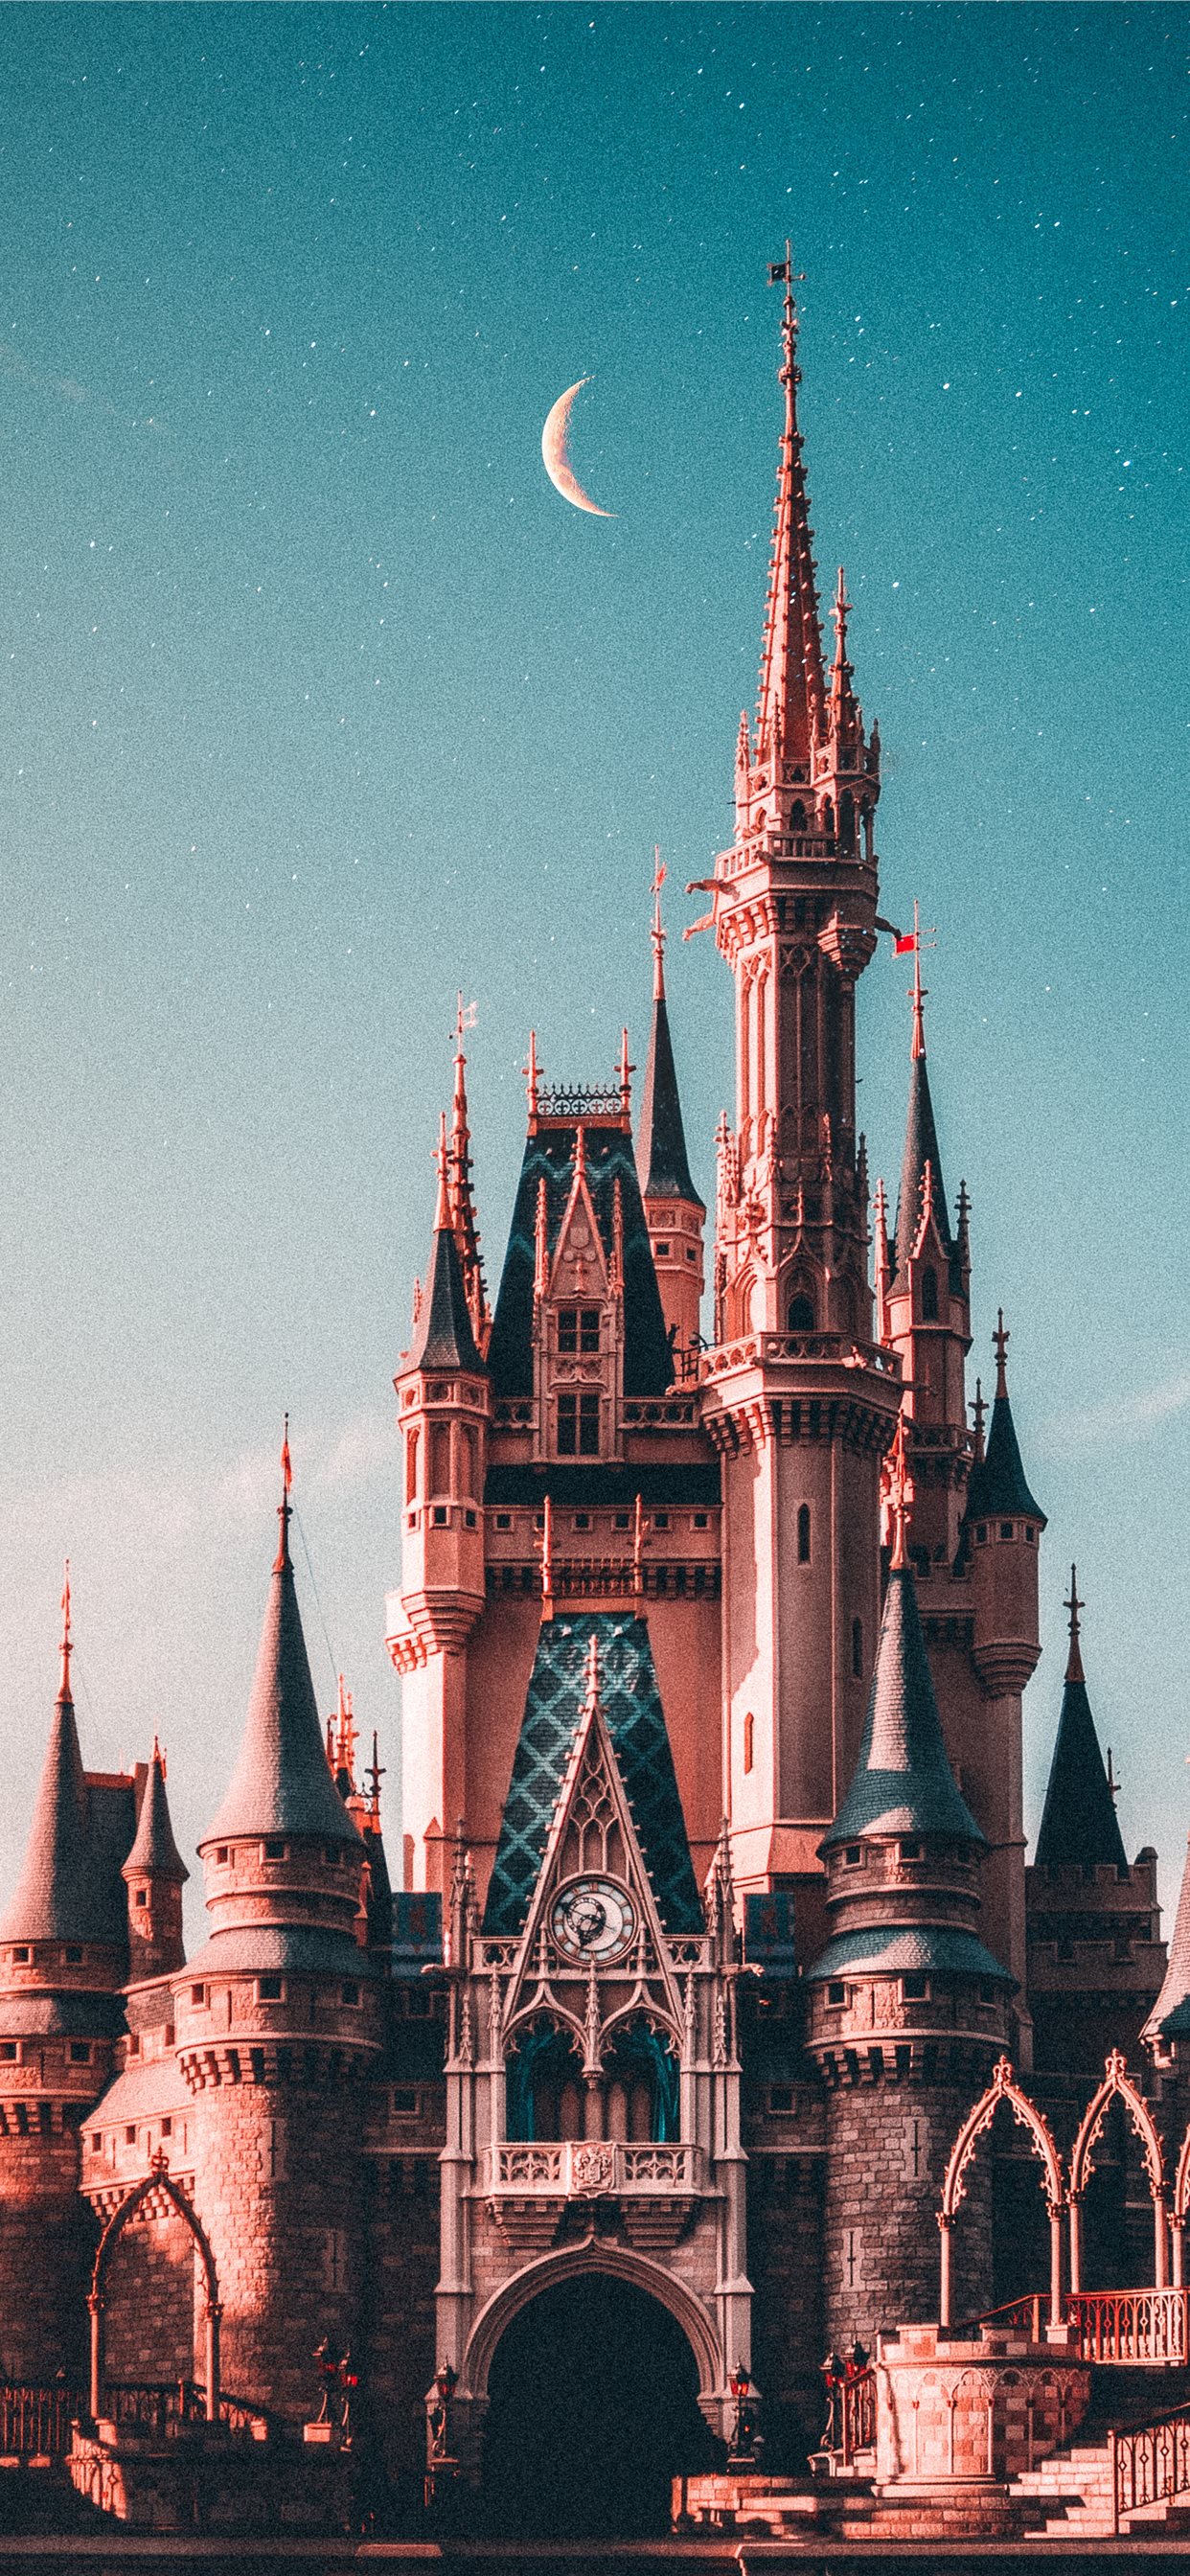 Bức hình nền tuyệt đẹp với tòa lâu đài Disneyland sẽ đưa bạn vào thế giới cổ tích đầy mộng mơ. Tận hưởng những giây phút thư giãn và lãng mạn bên tòa lâu đài đẹp nhất trong các bộ phim hoạt hình nổi tiếng của Disney trên iPhone X. 